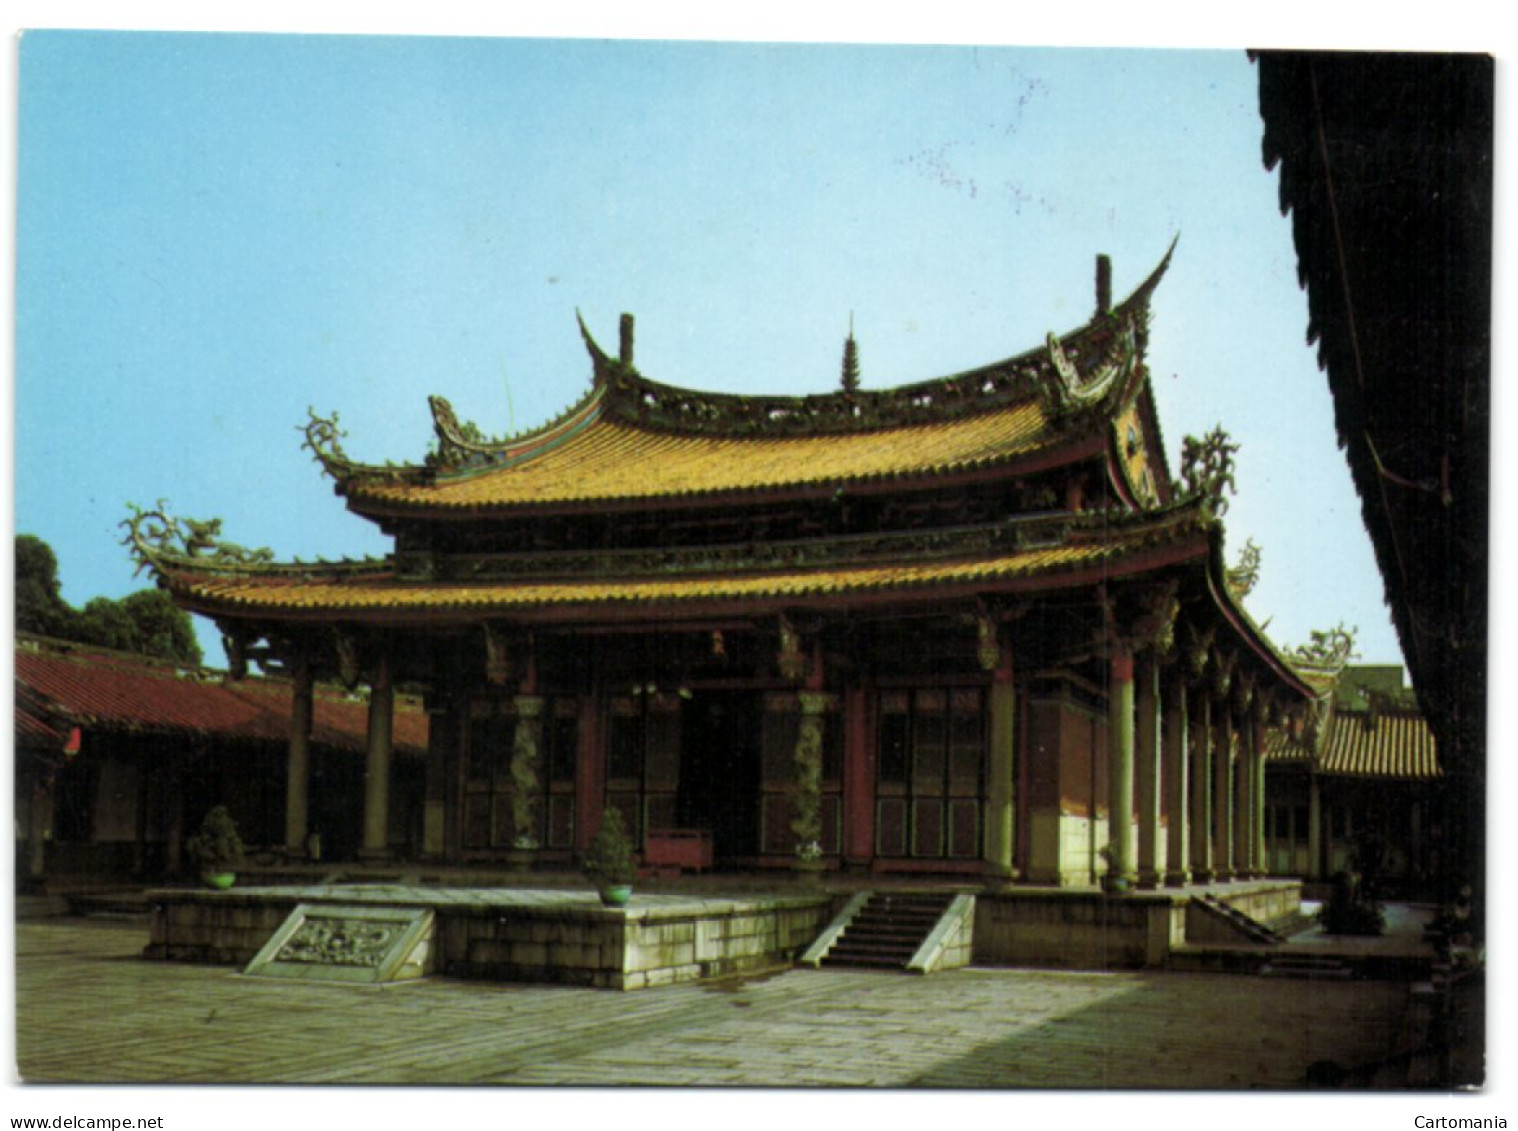 The Confucius Temple - Taipei - Taiwan